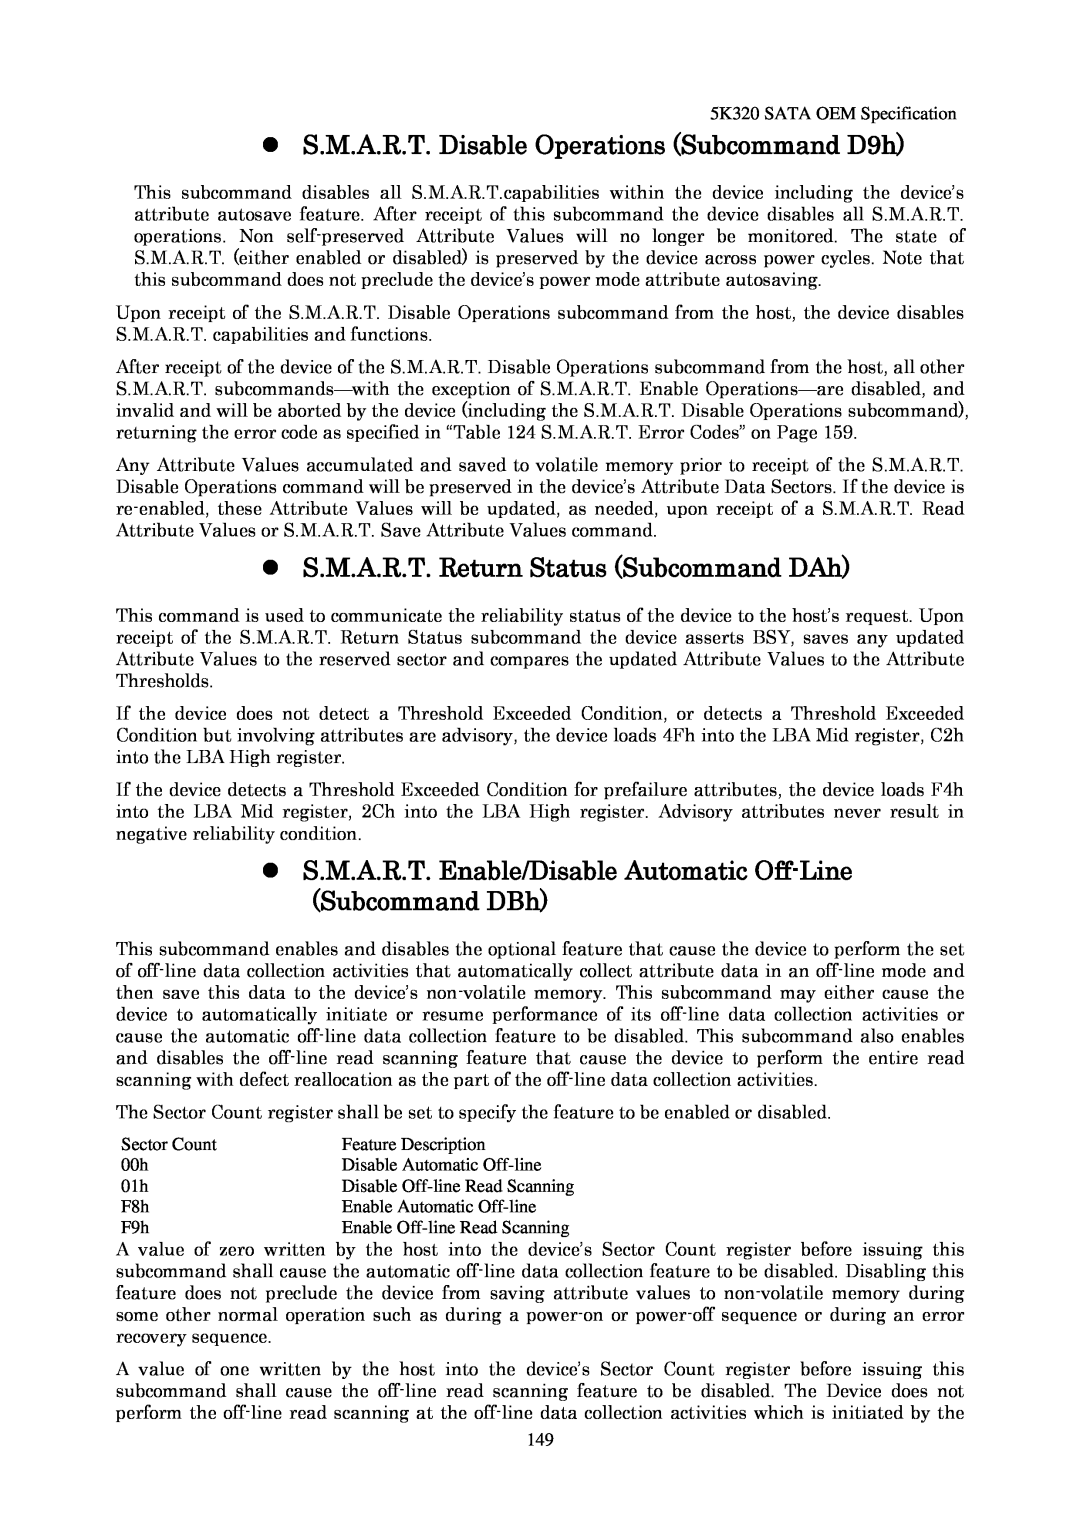 Hitachi HTS543216L9A300 manual S.M.A.R.T. Disable Operations Subcommand D9h, S.M.A.R.T. Return Status Subcommand DAh 